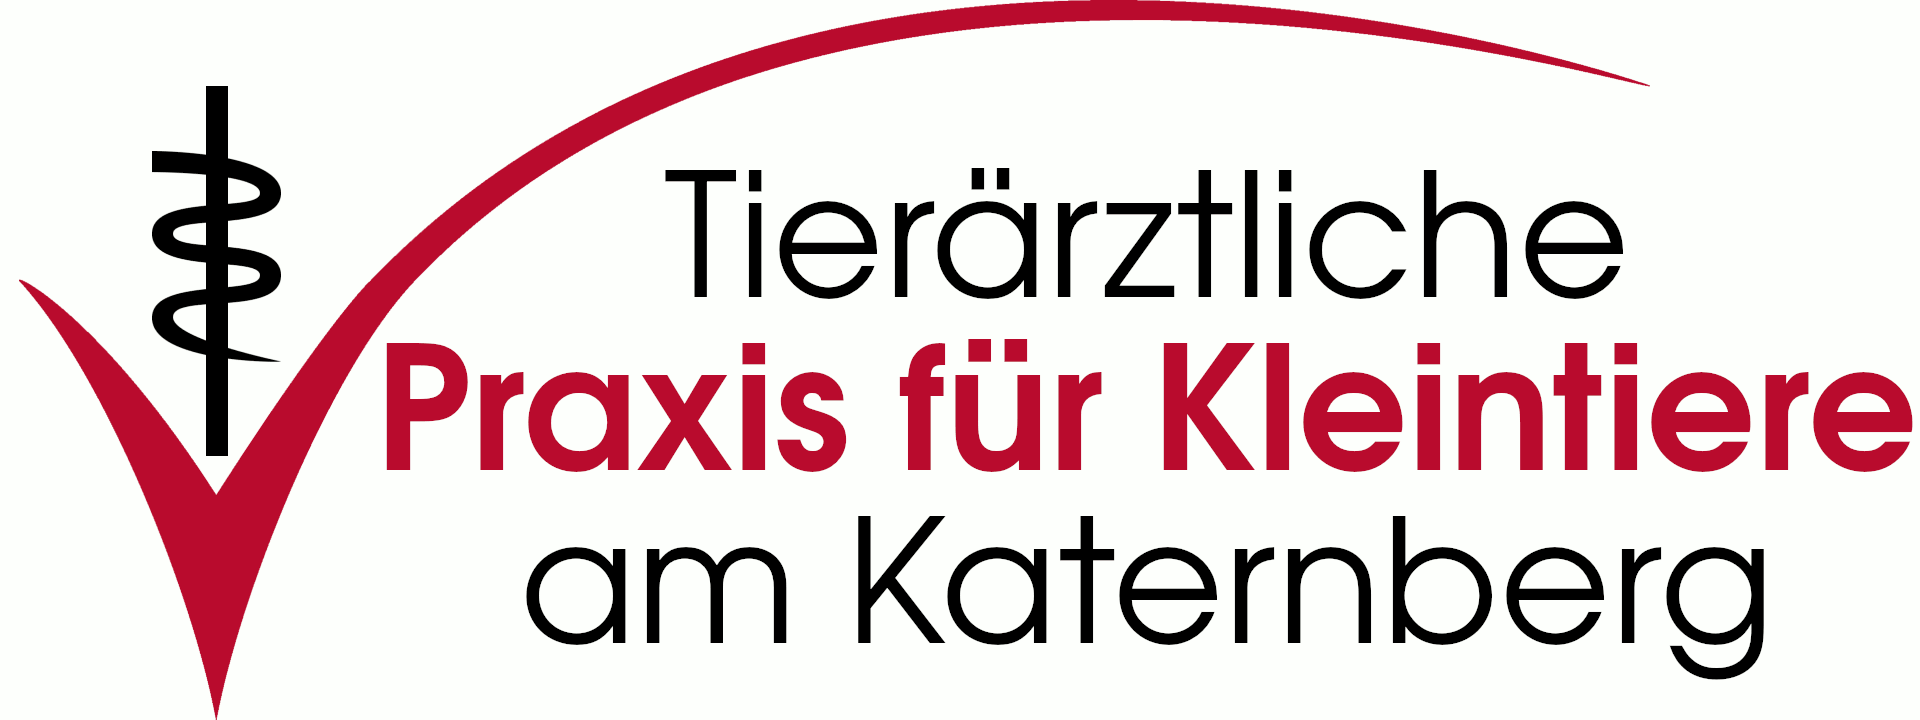 Titelgrafik zum Stellenangebot für Tierarzt in der Tierärztlichen Praxis für Kleintiere am Katernberg in Wuppertal von Ute Lipka